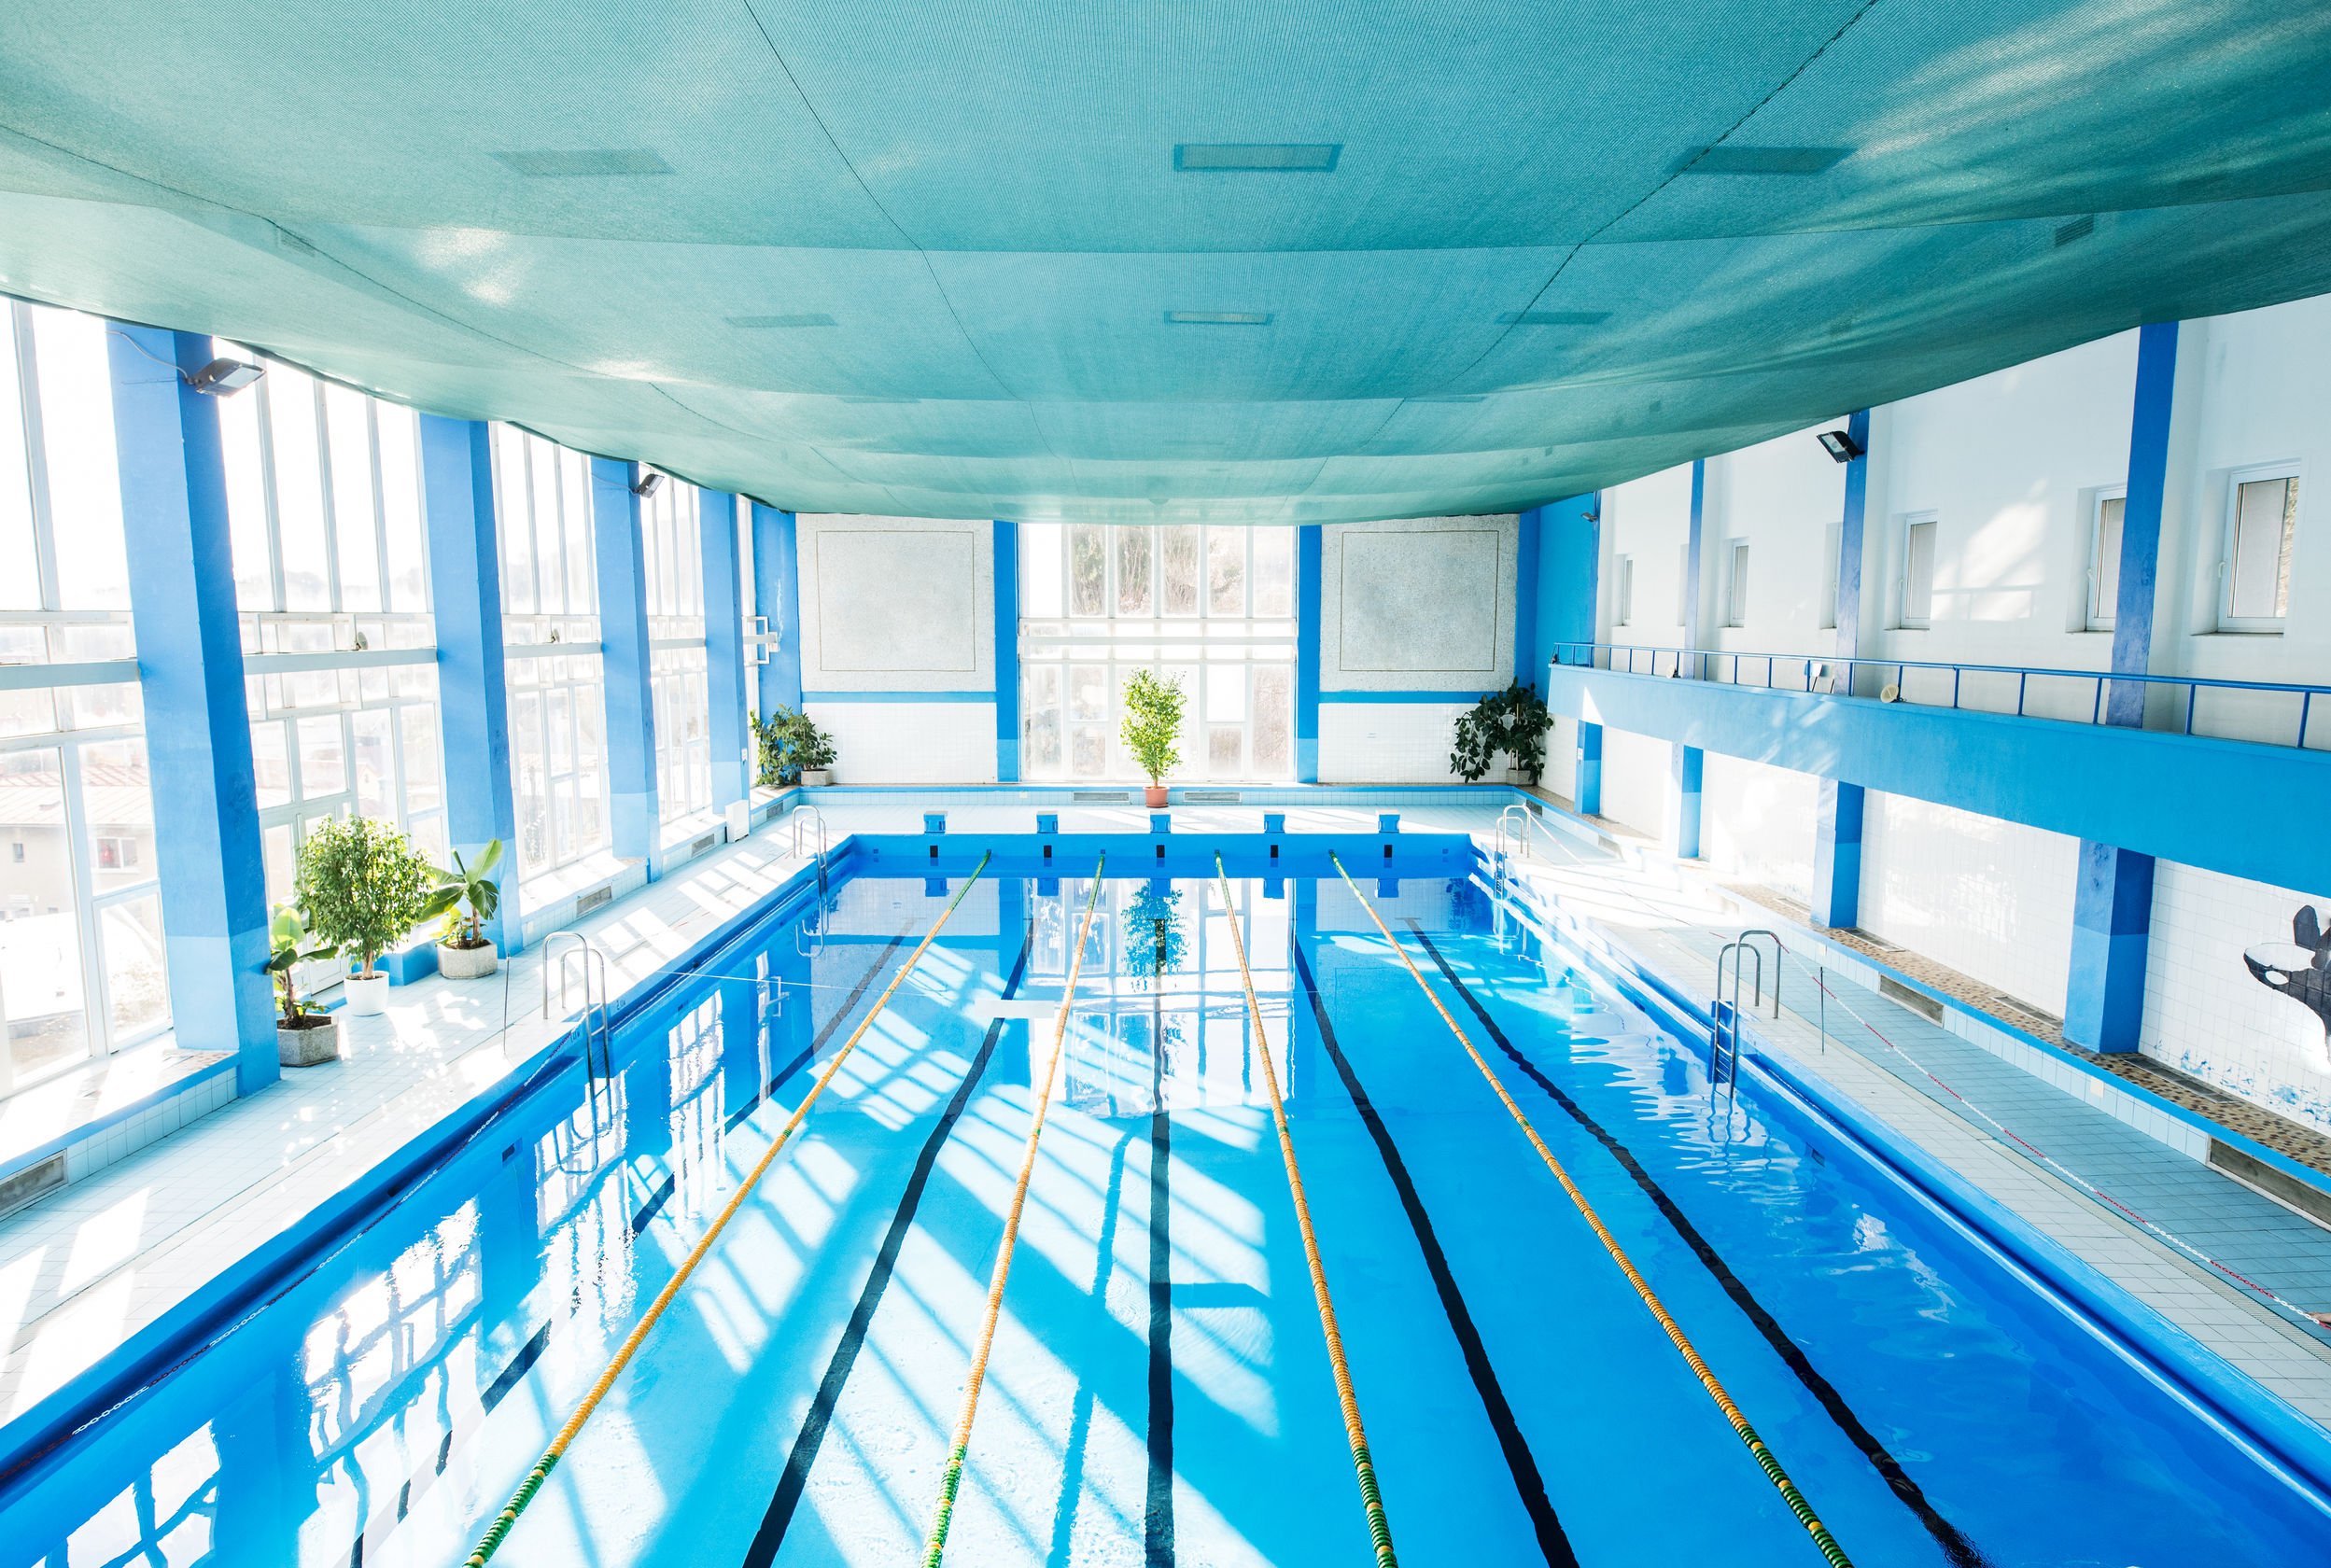 prix alarme piscine, piscine intérieure aux dimensions olympiques